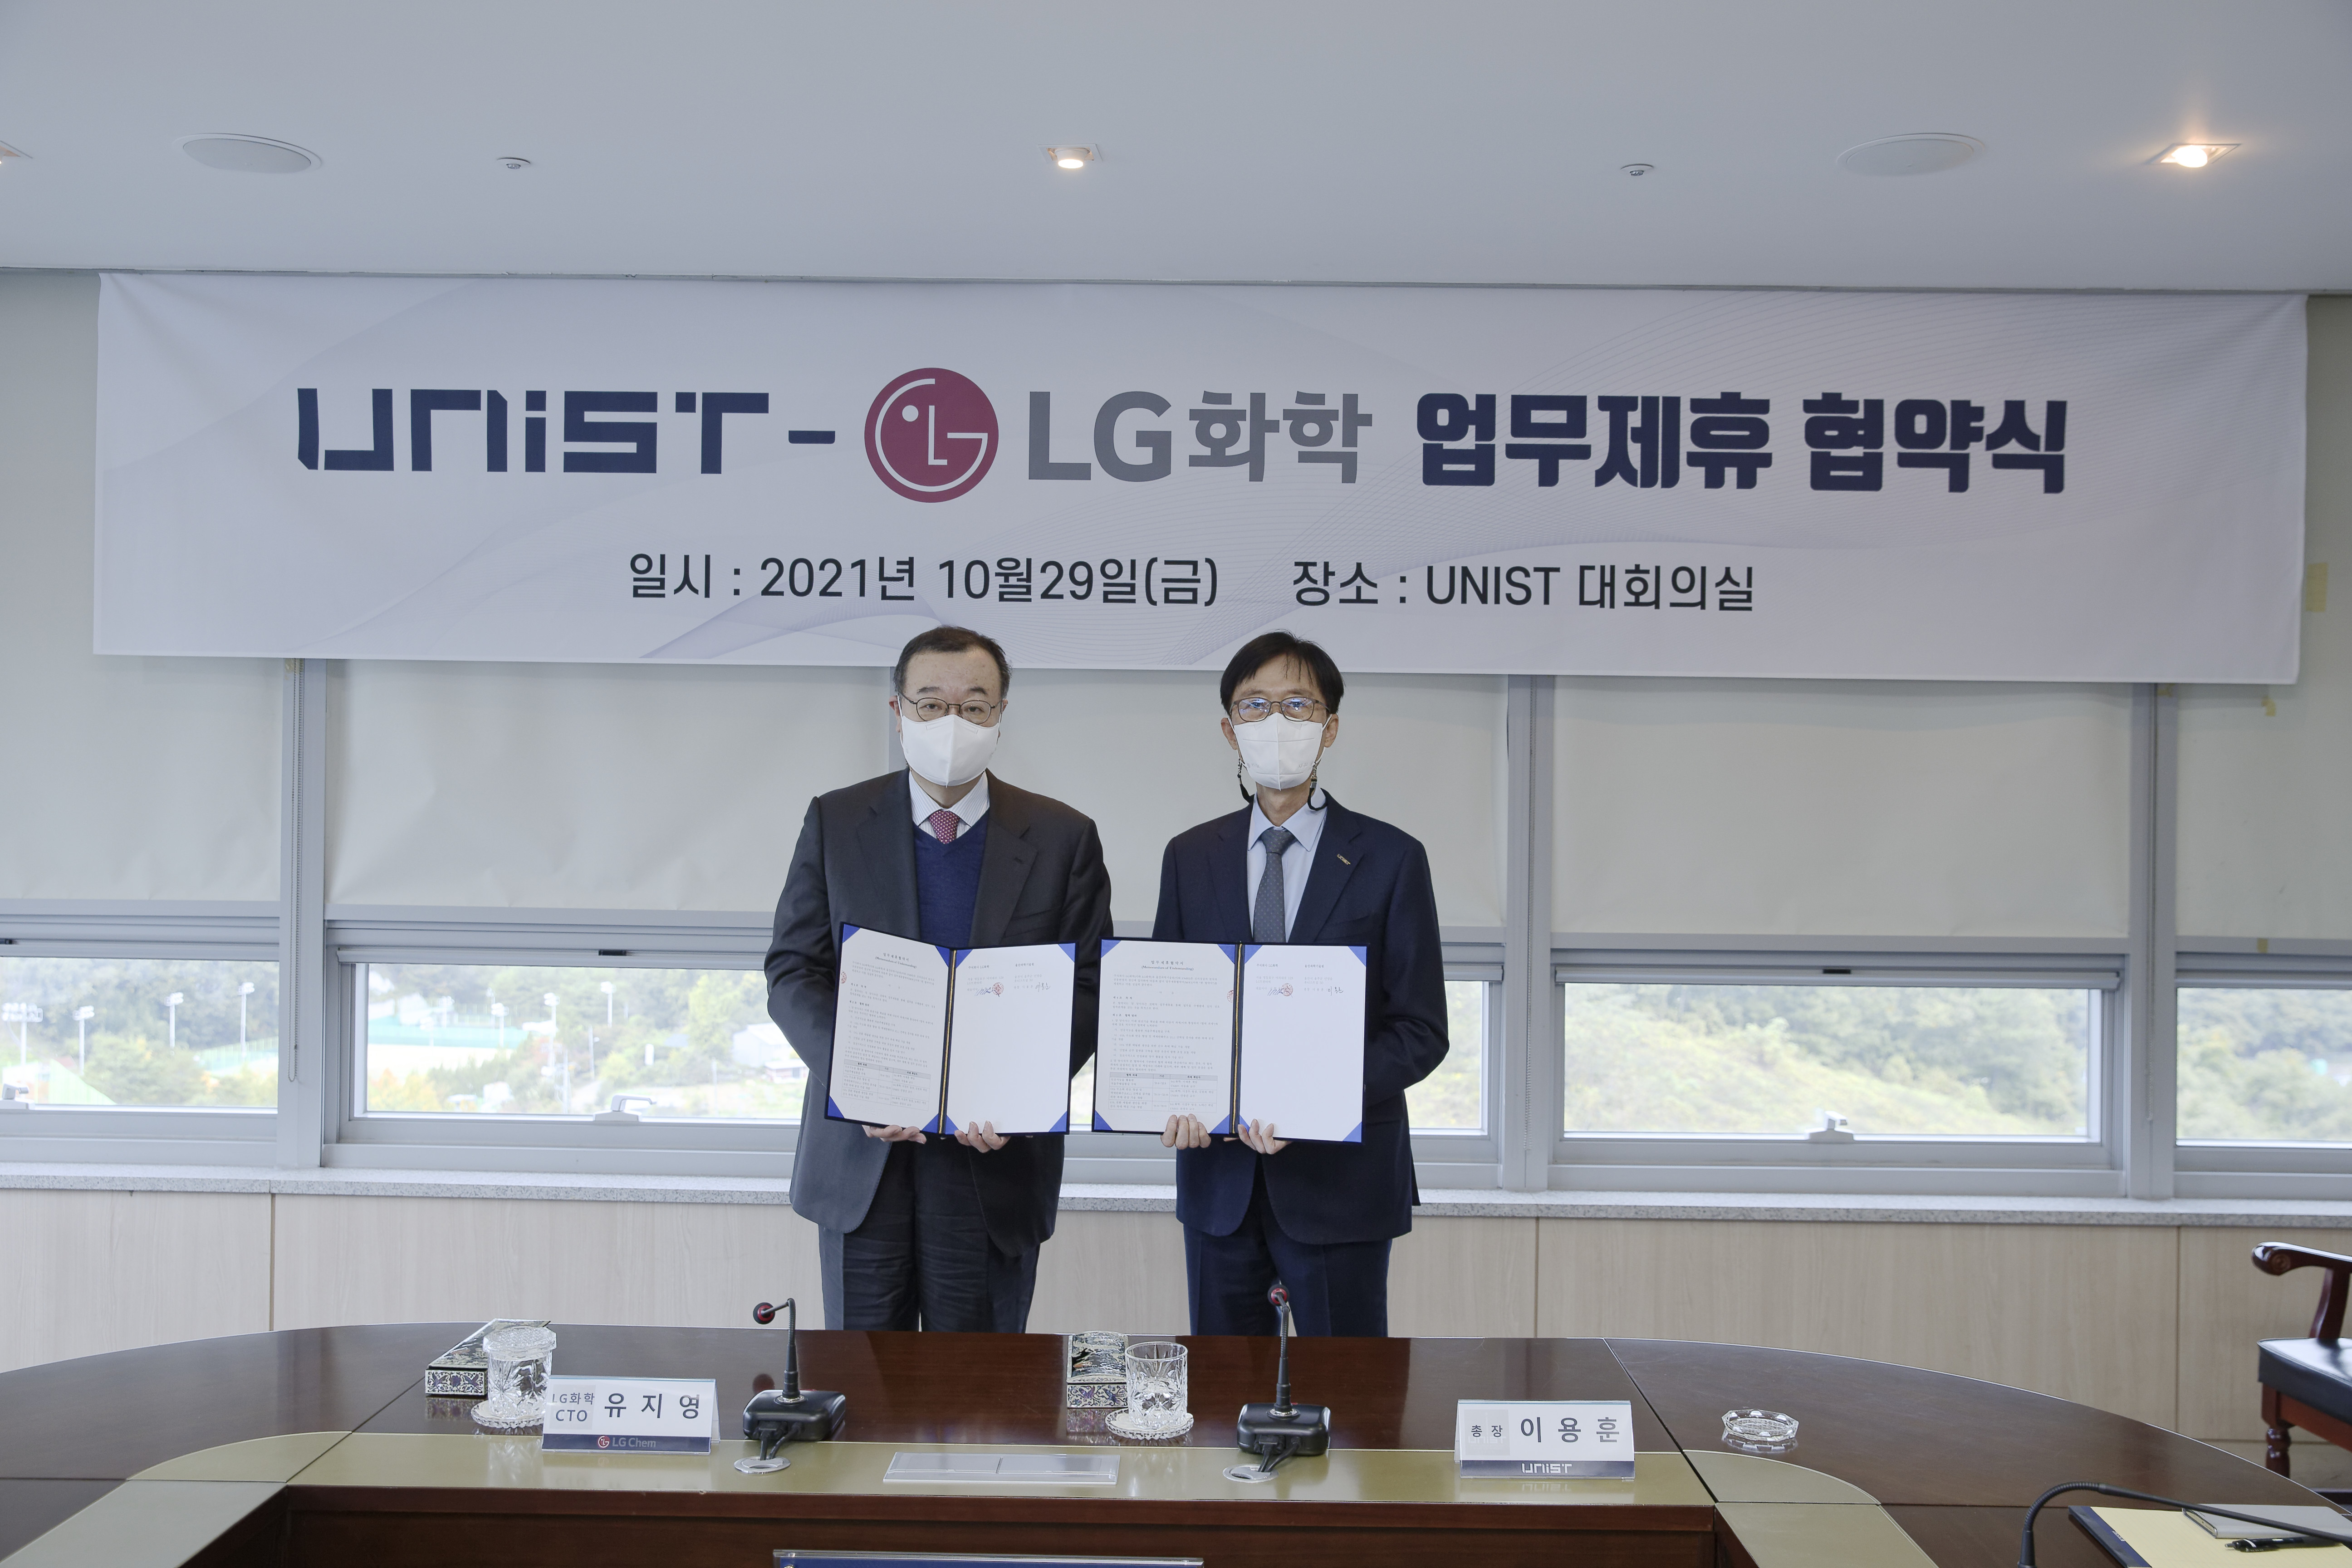 이용훈 UNIST 총장(오른쪽)과 유지영 LG화학 CTO(왼쪽) | 사진: 김경채